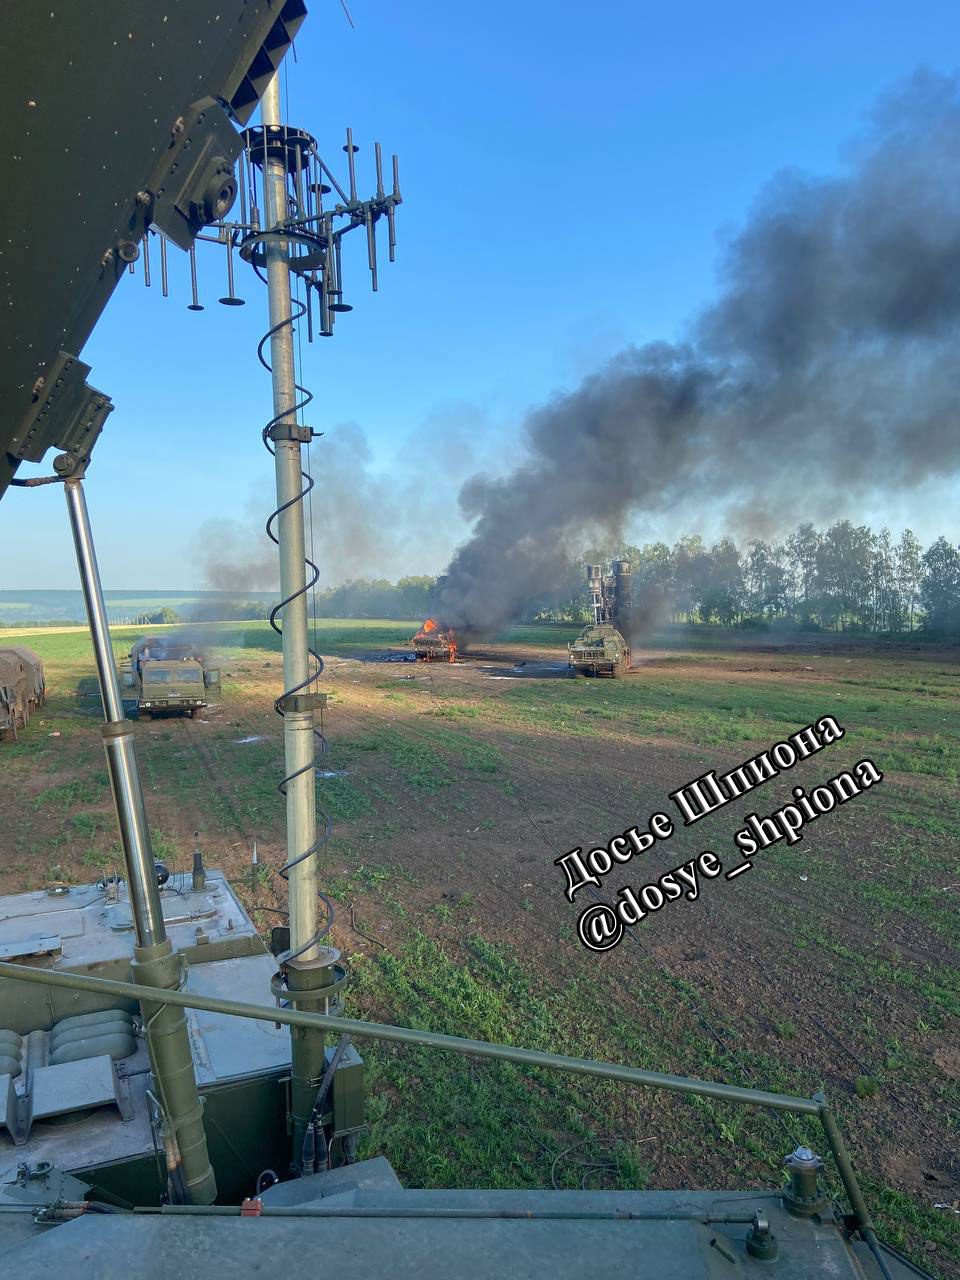 Hình ảnh cho thấy hai bệ phóng S-400, một xe radar và một xe chỉ huy bị hư hại trong cuộc tấn công.